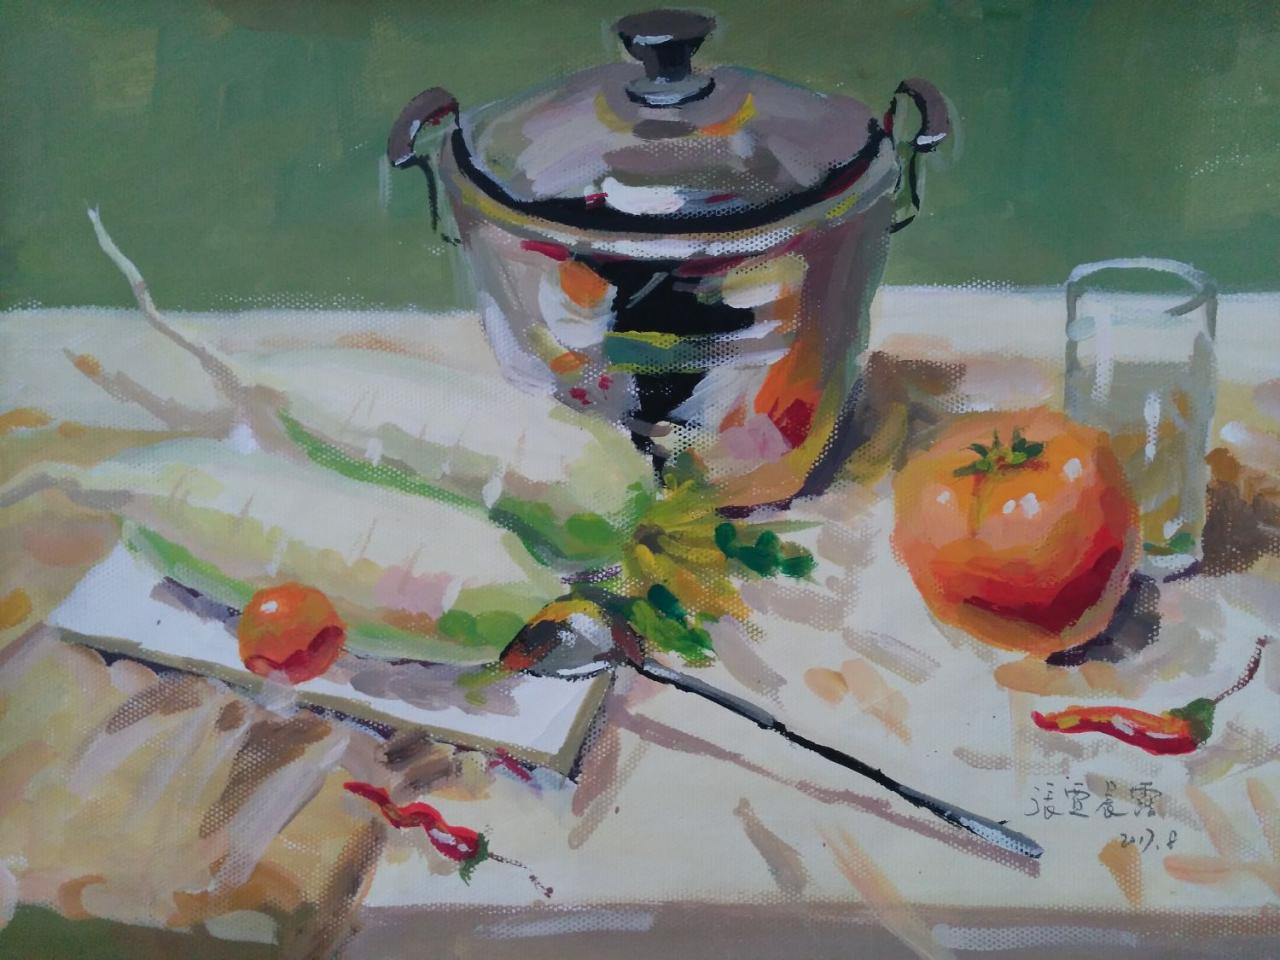 水粉静物 锅、西红柿、萝卜、玻璃杯、盘子、辣椒等 张贾晨露画